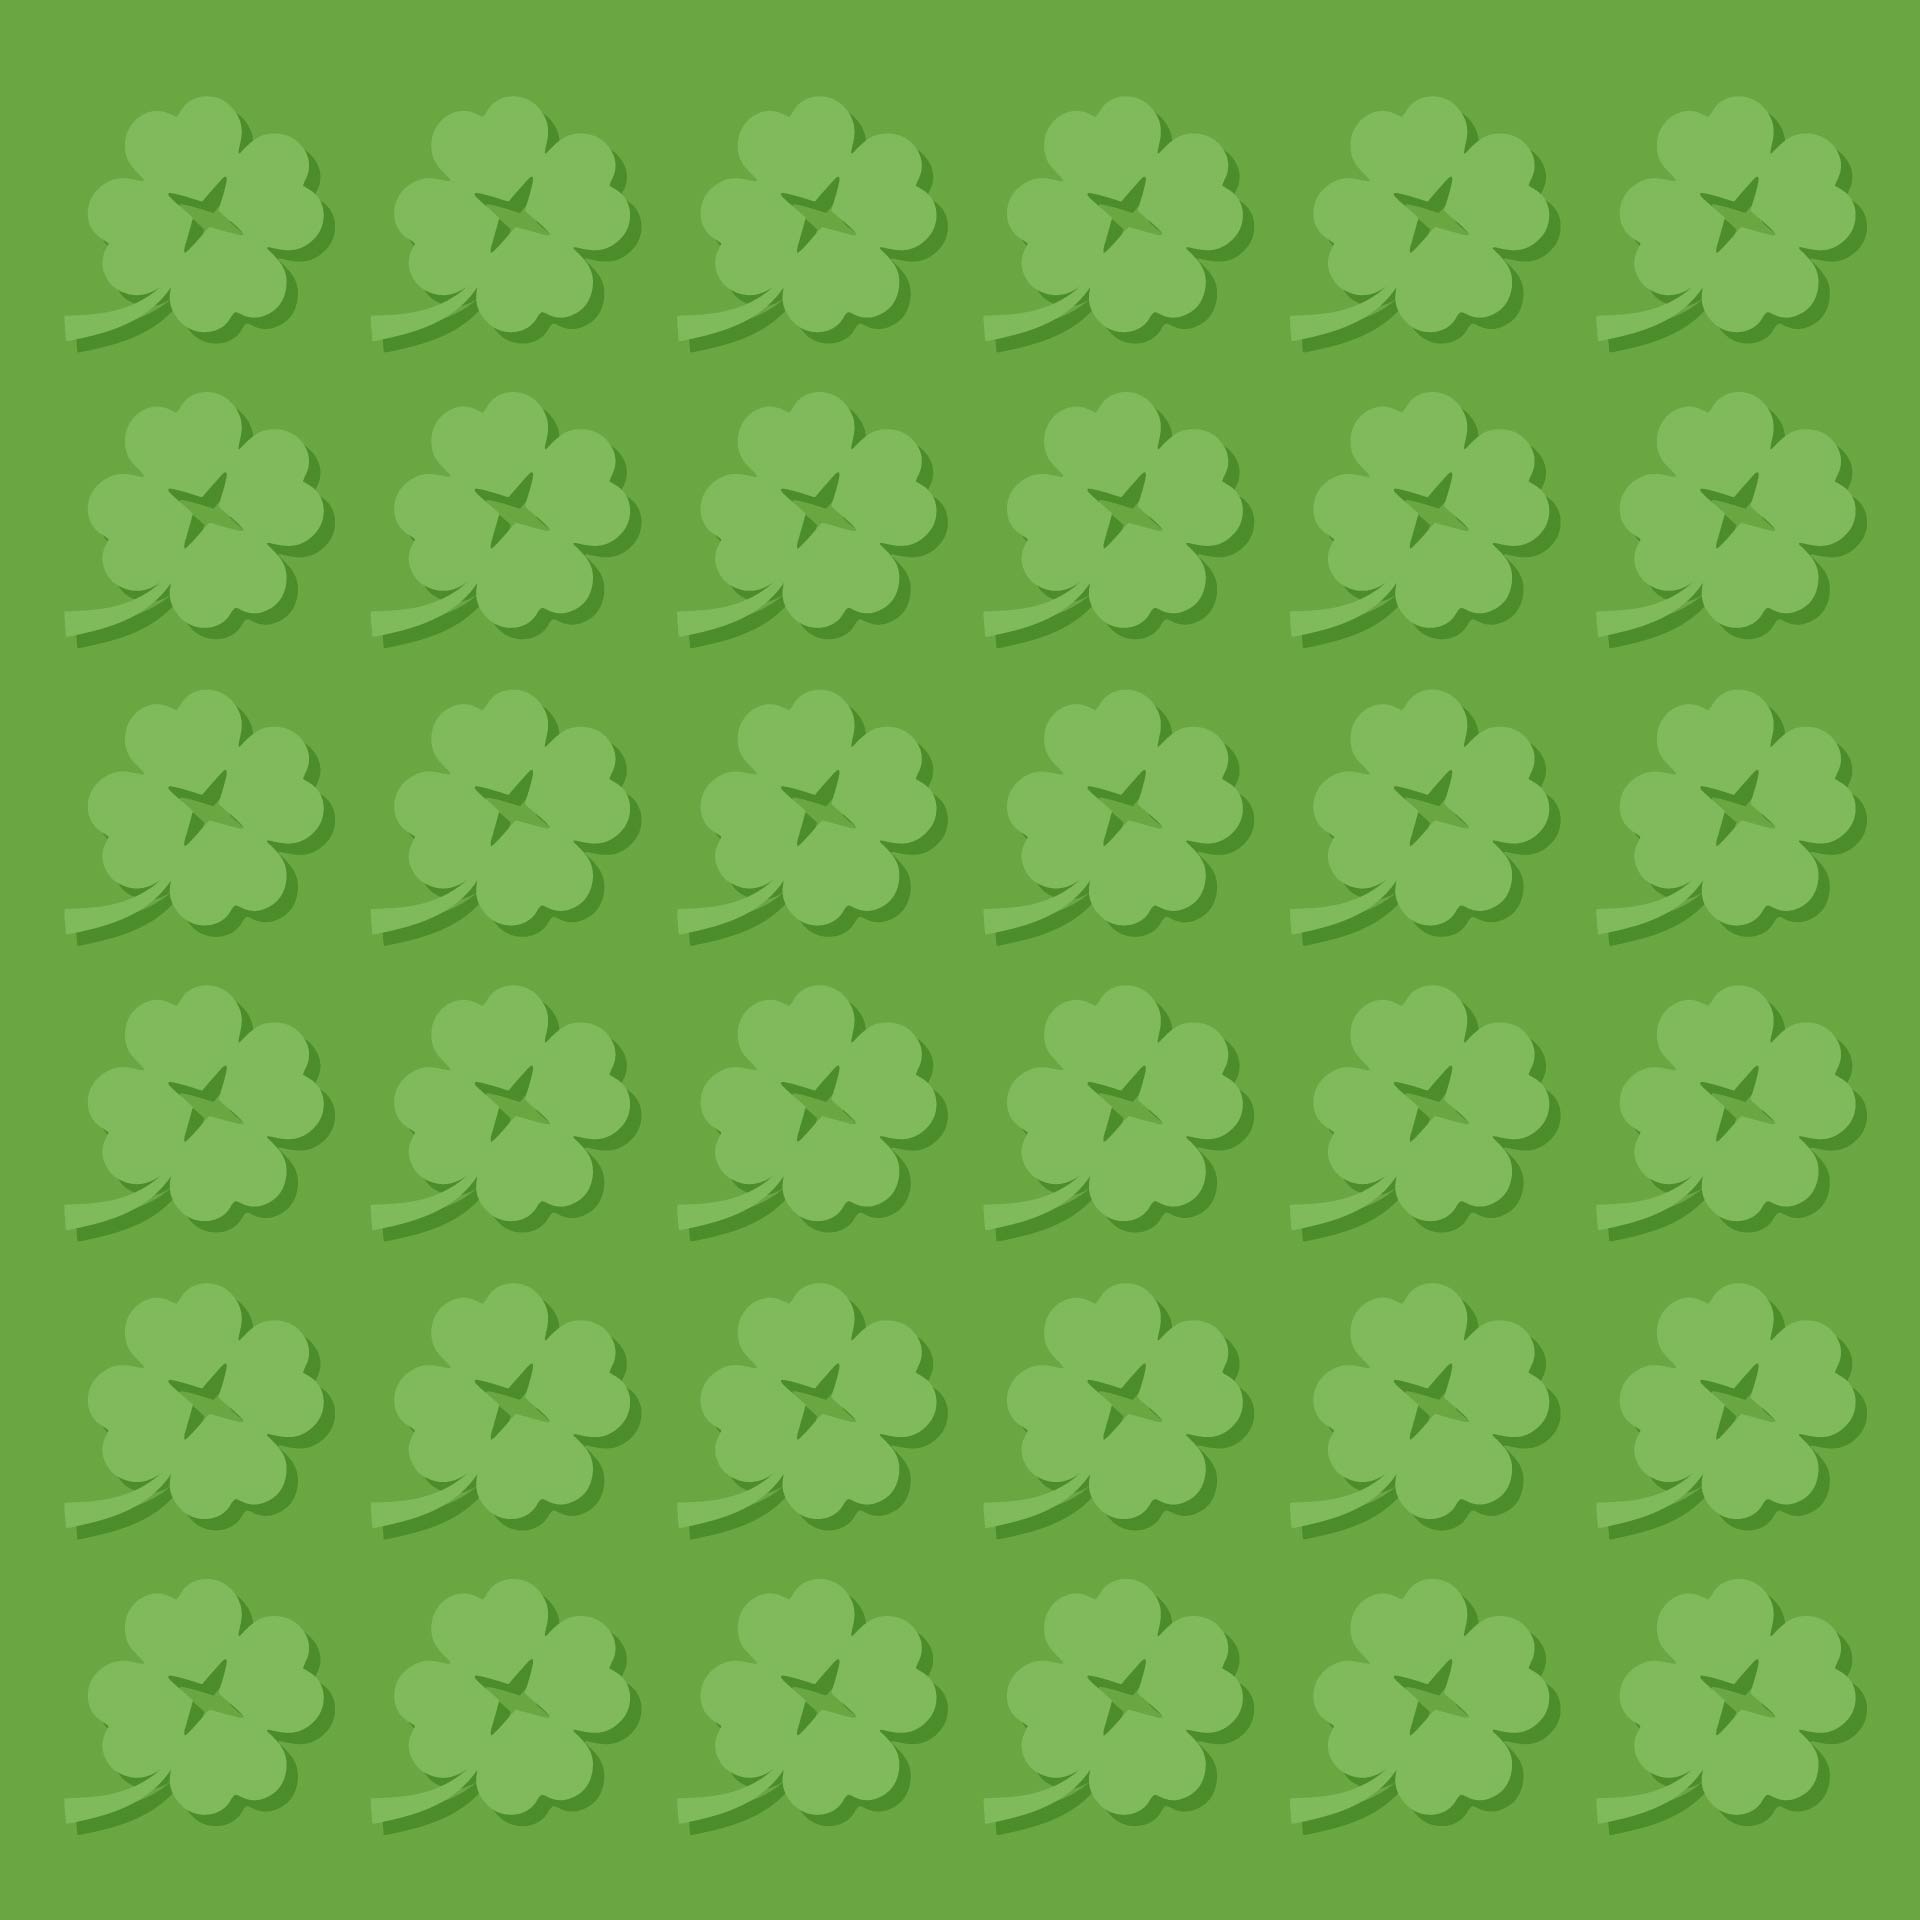 4 Clover Leaf Template Shamrock Pattern